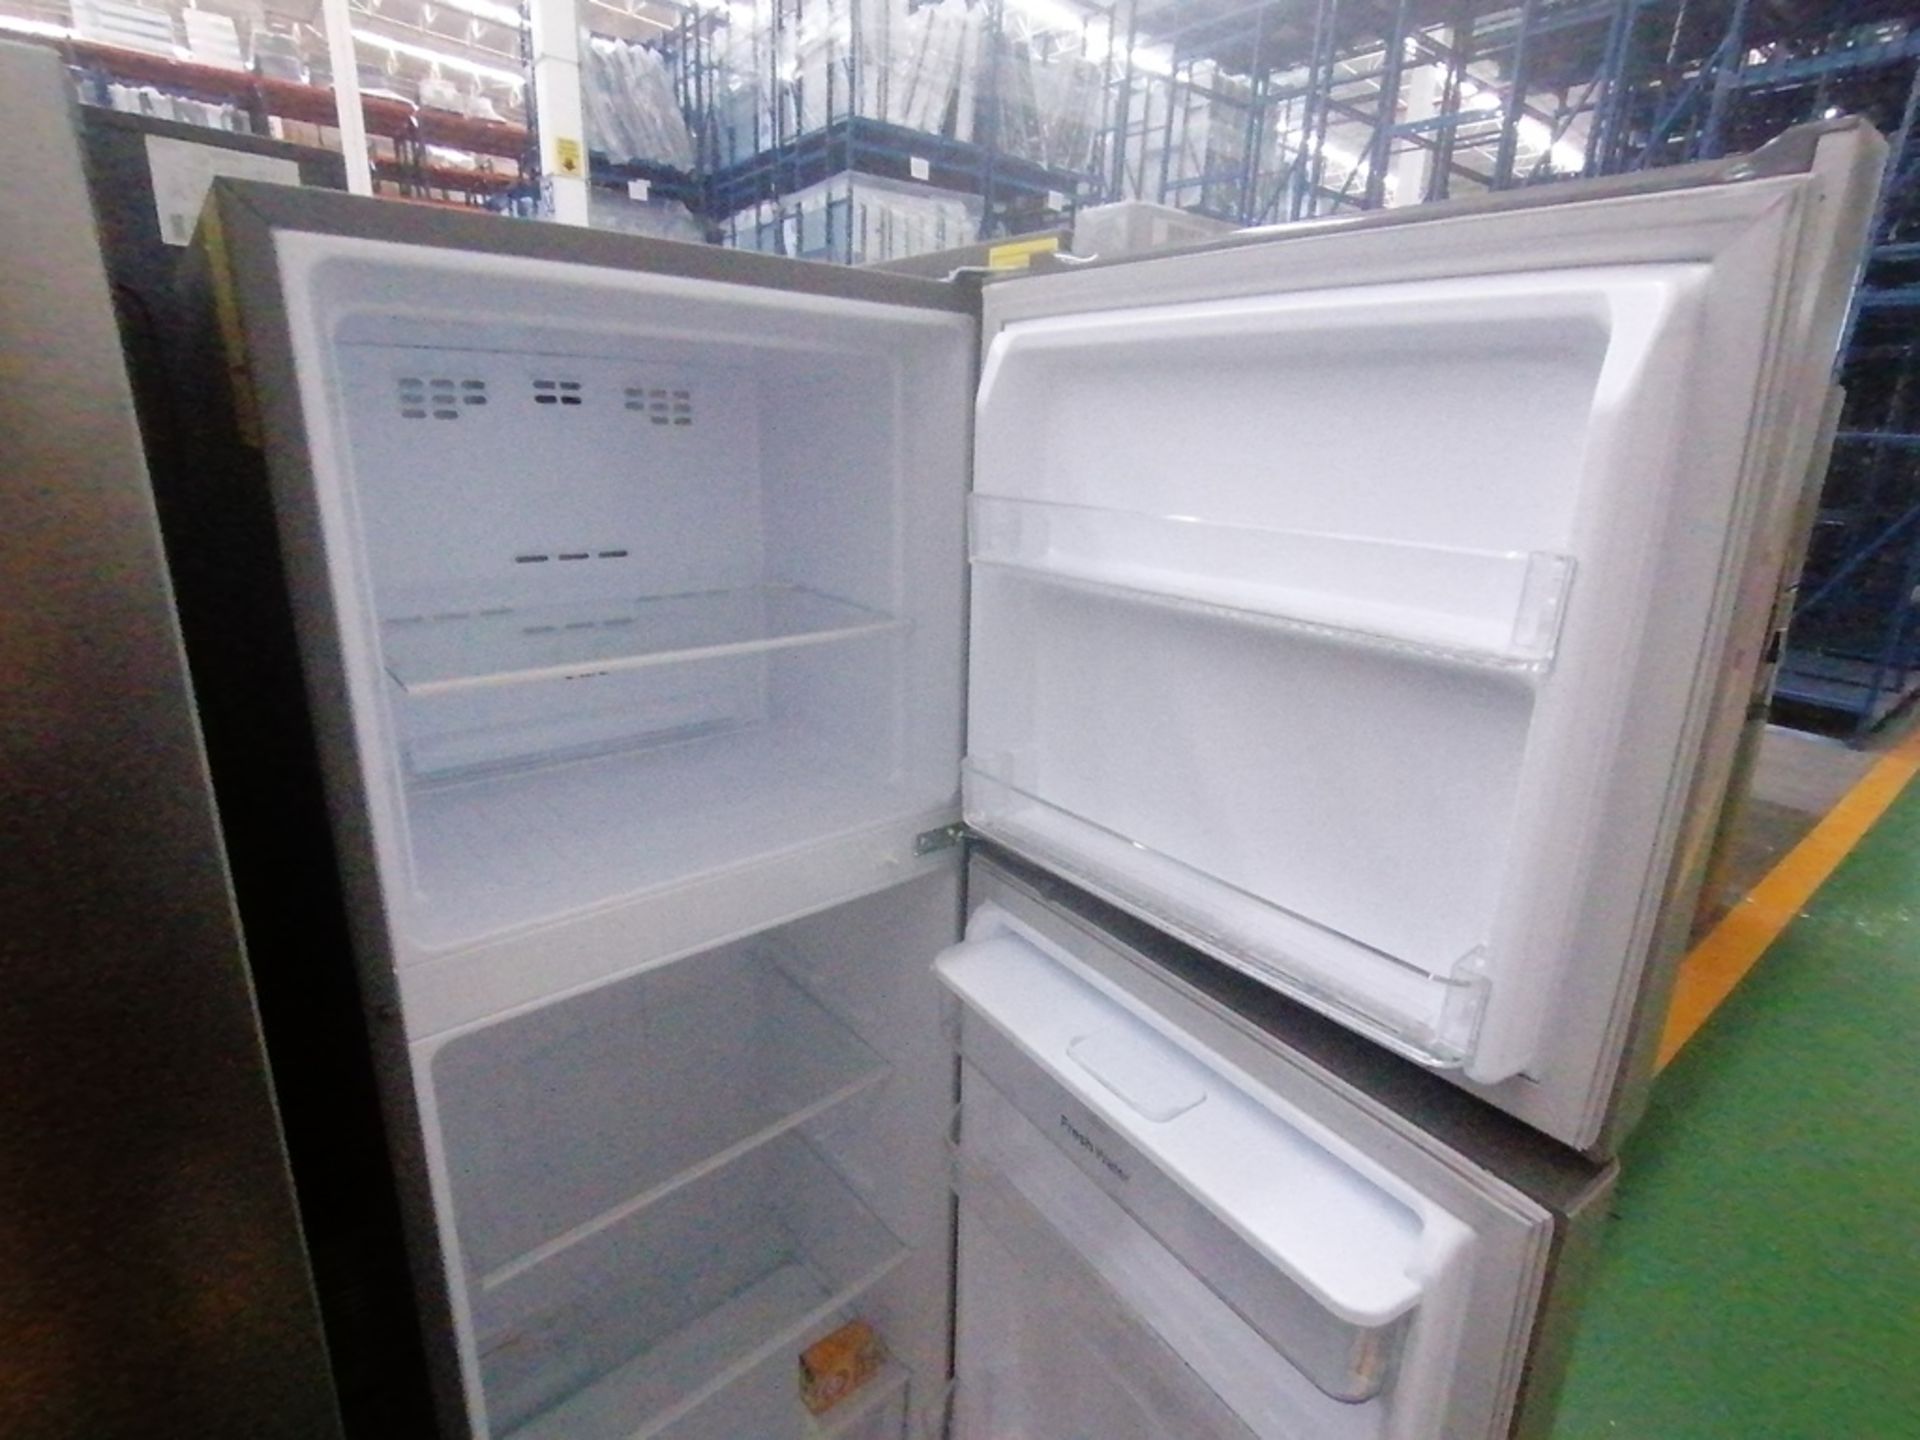 Lote de 2 refrigeradores incluye: 1 Refrigerador con dispensador de agua, Marca Winia, Modelo DFR40 - Image 11 of 16